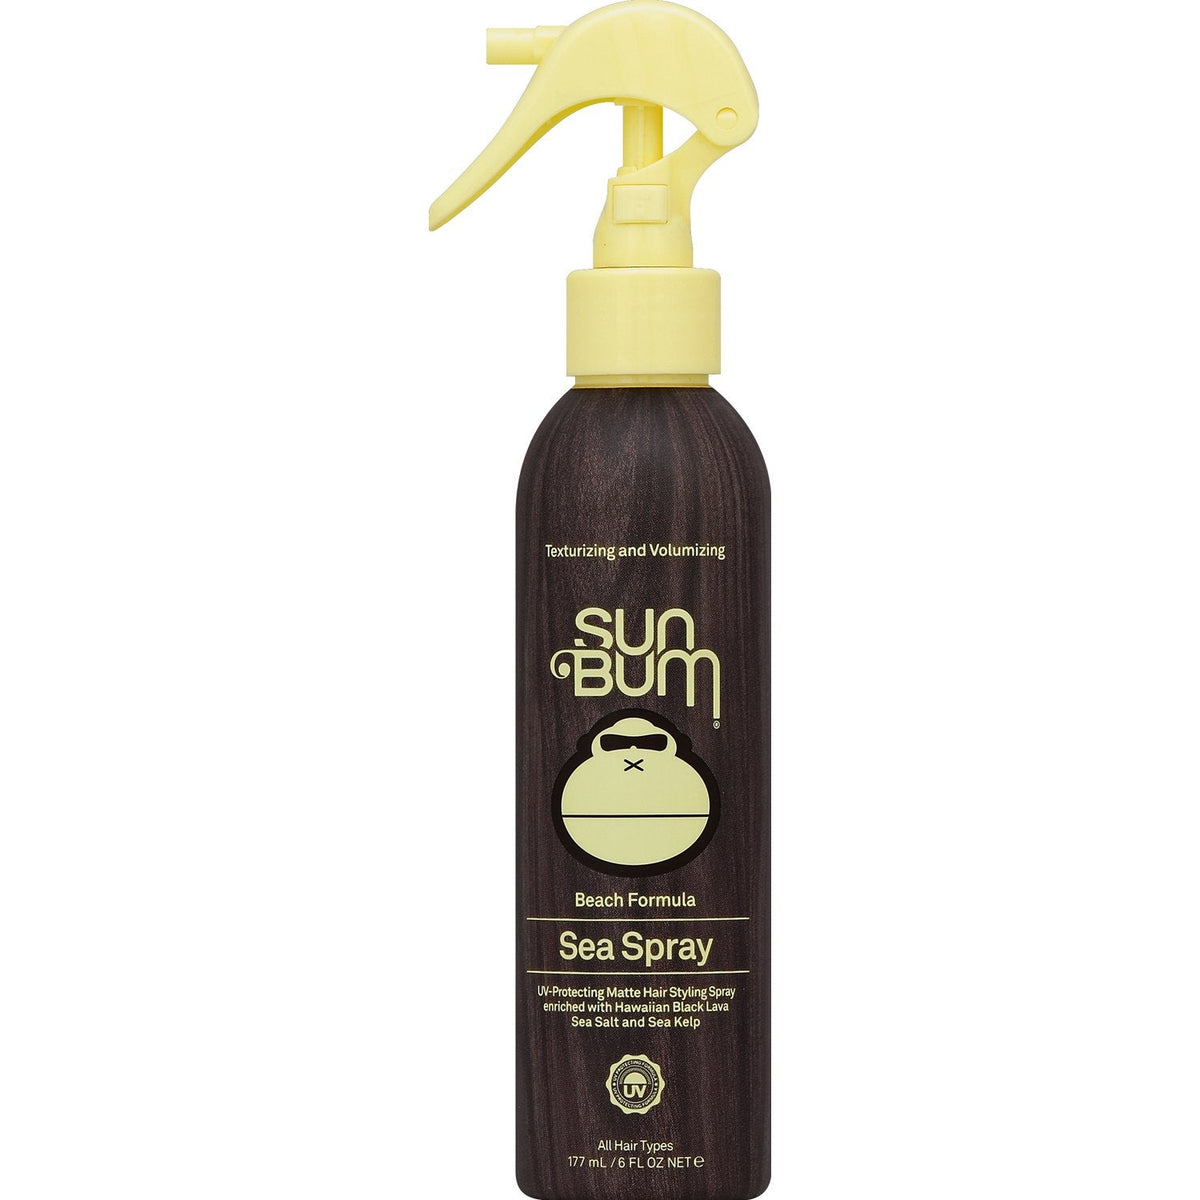 Sea Spray Sunscreen - 6 oz